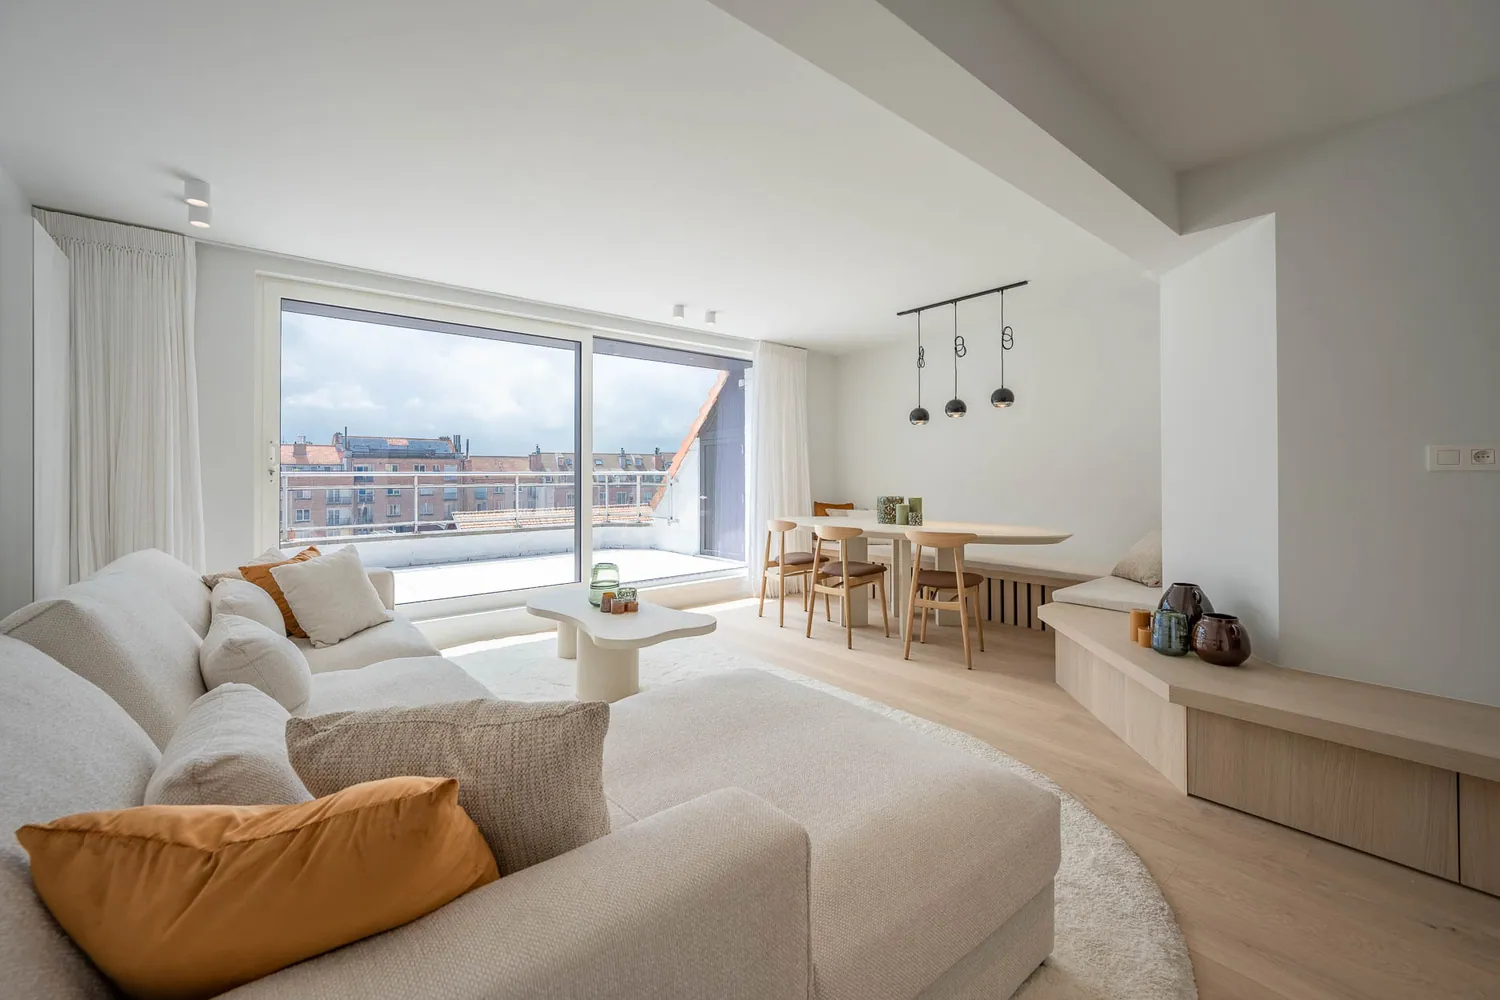 Appartement 3-chambres rénové de haute qualité avec de spacieuses terrasses ensoleillées près de l'avenue Dumortier.